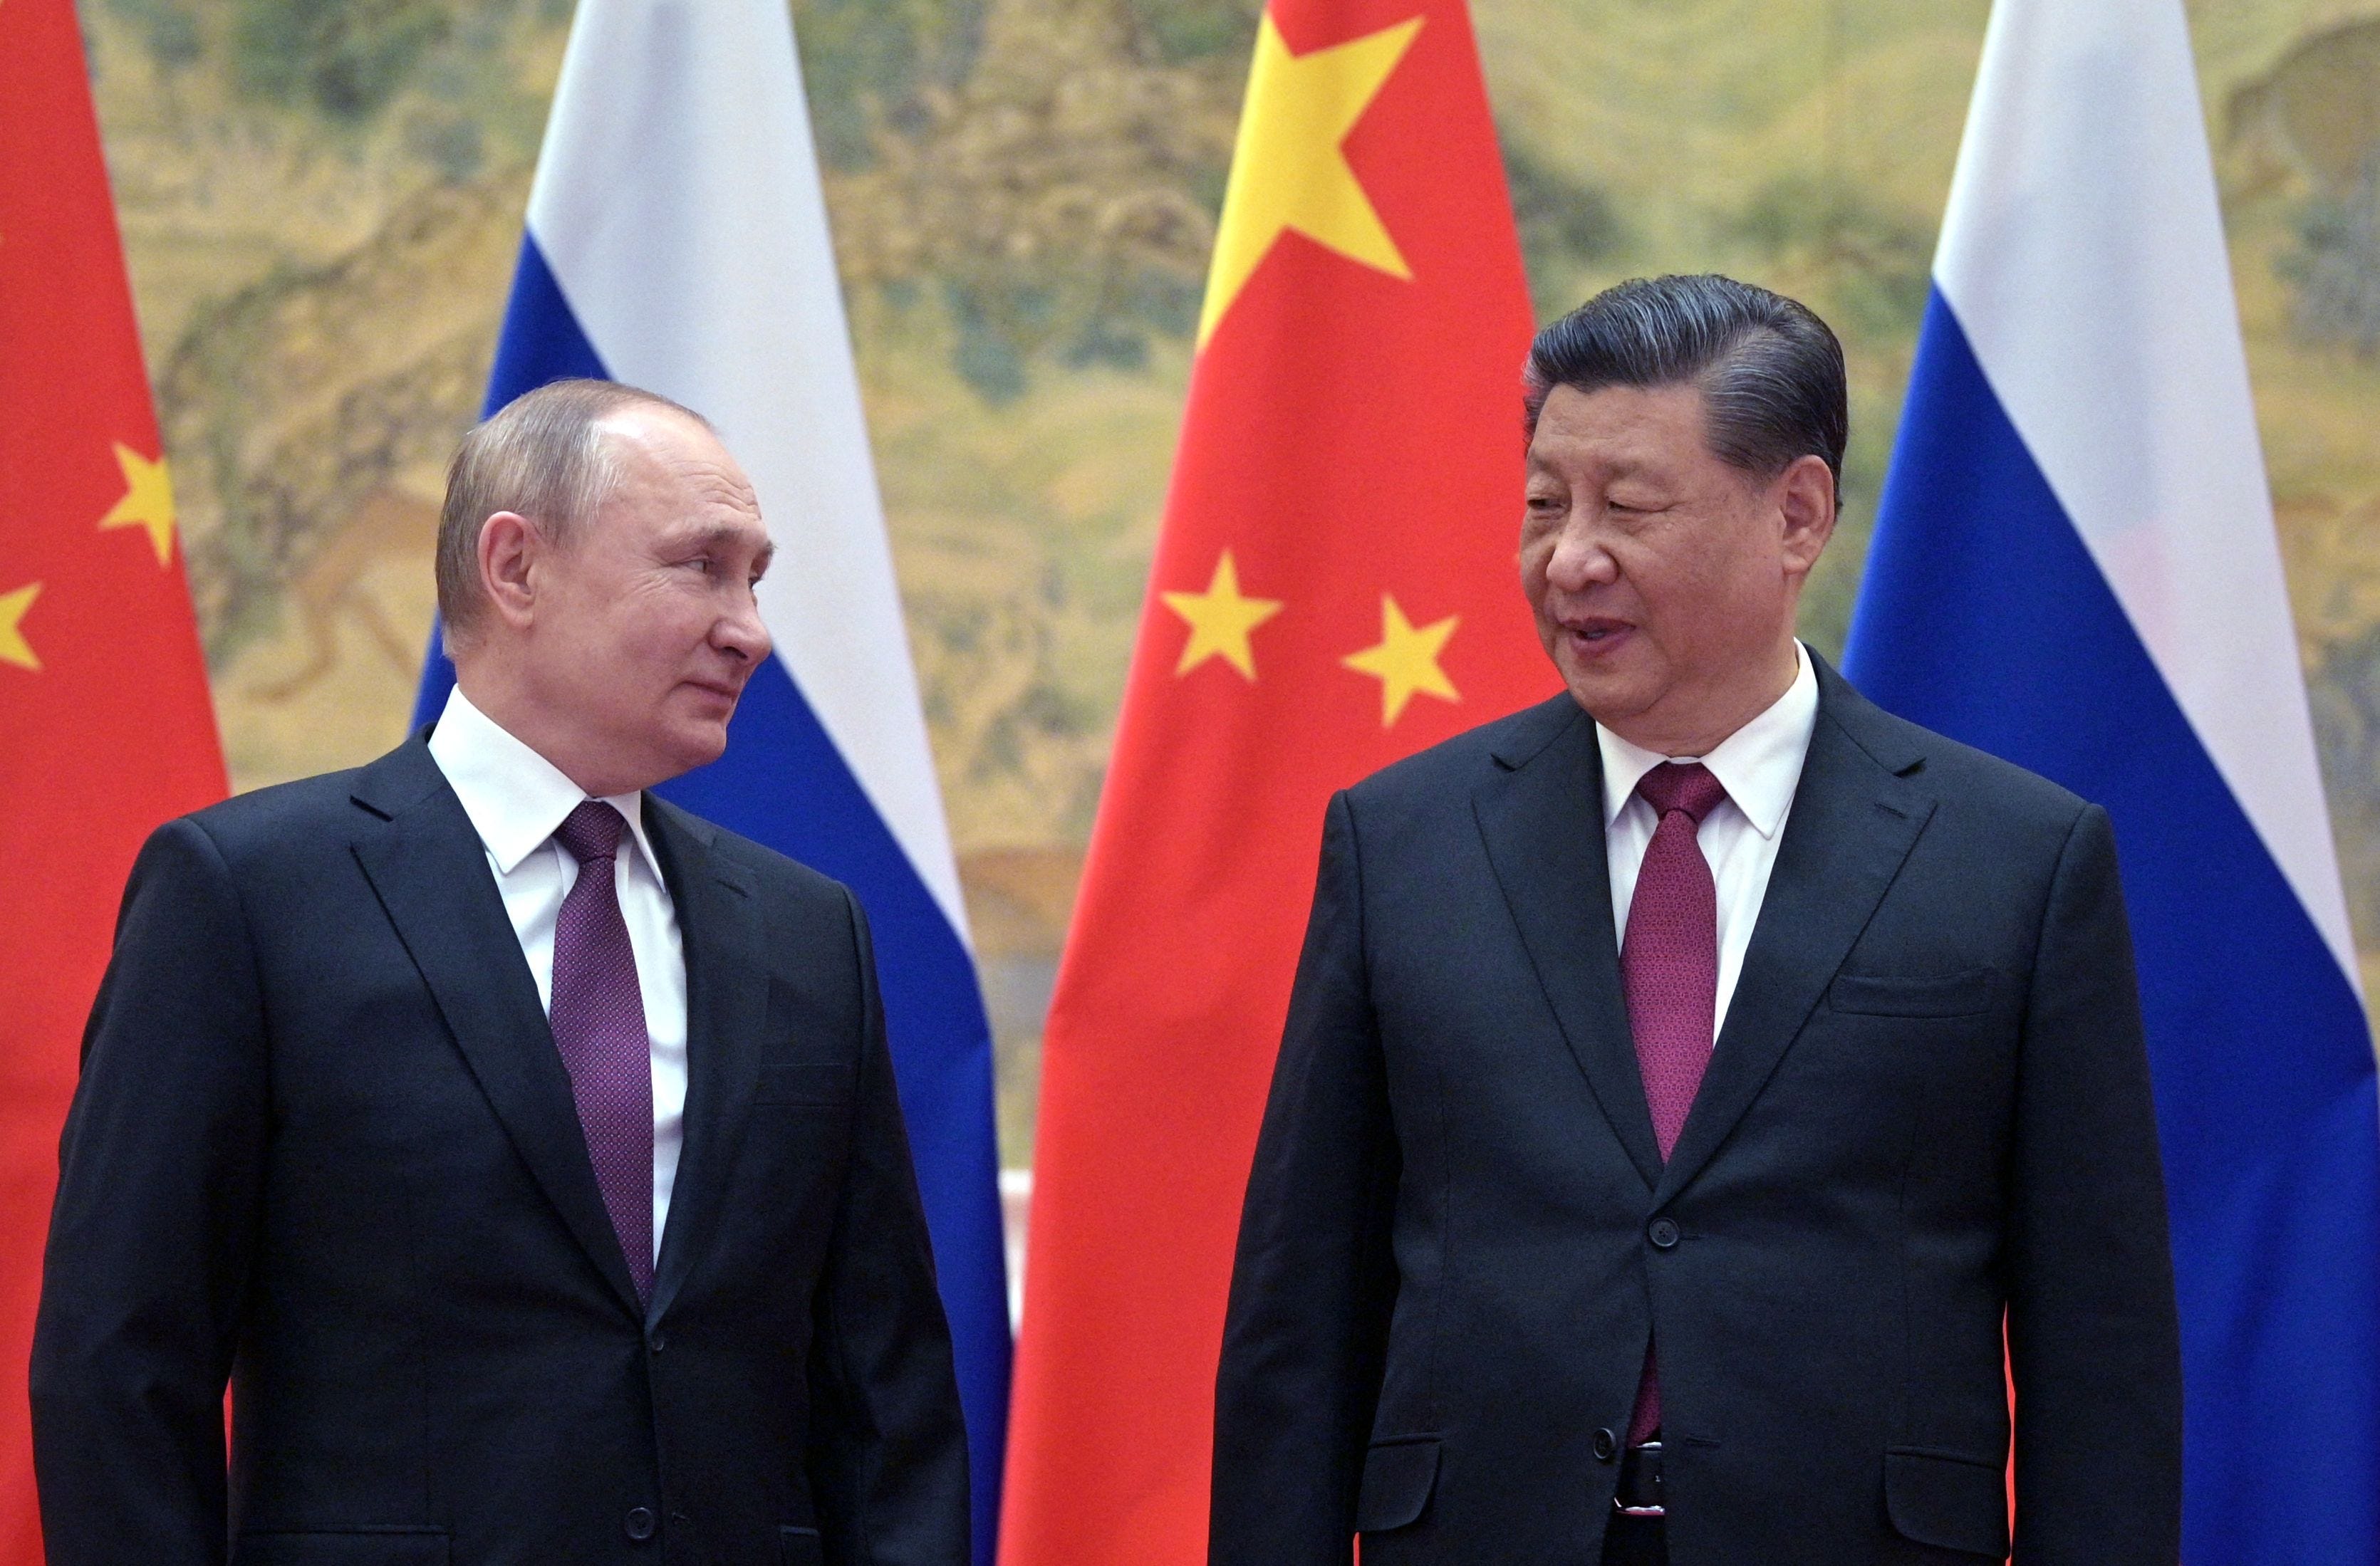 Der russische Präsident Wladimir Putin (l.) und der chinesische Präsident Xi Jinping posieren für ein Foto während ihres Treffens in Peking am 4. Februar 2022.